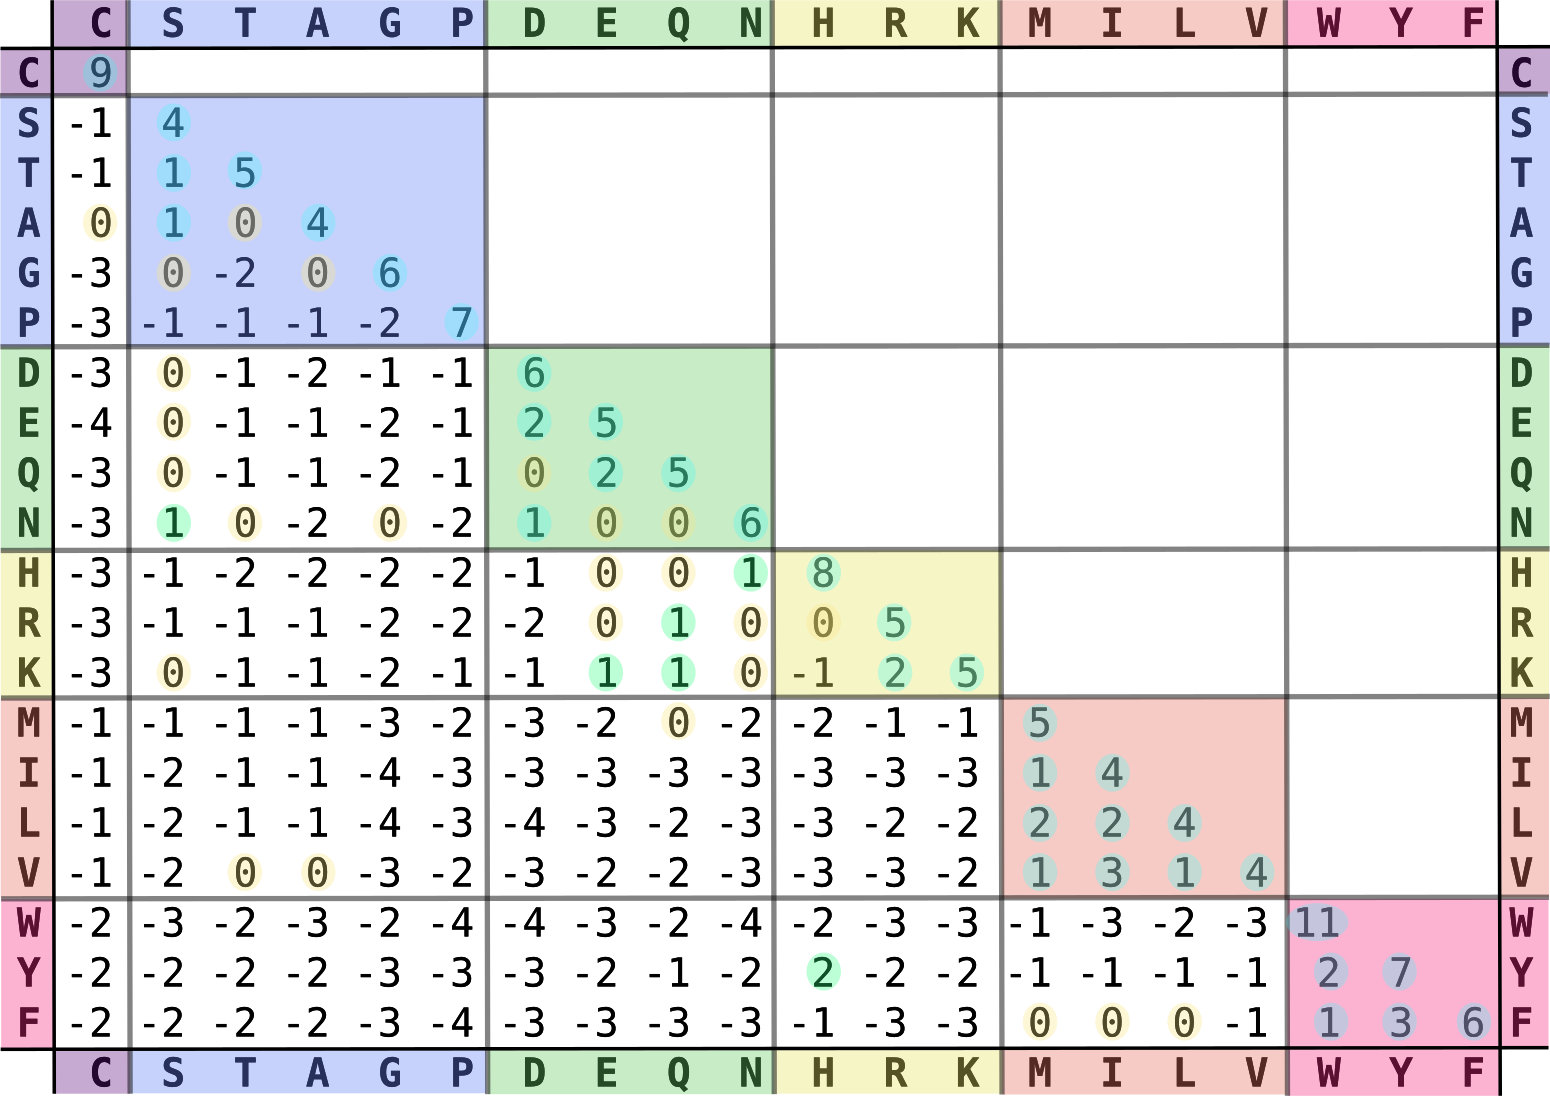 Matriz de sustitución aminoacídica BLOSUM62. Las letras en filas y columnas de la matriz refieren a los veinte aminoácidos naturales codificados directamente, y su color refleja sus tipos estructurales y fisicoquímicos. Las entradas numéricas de la matriz son proporcionales al logaritmo de la frecuencia con la que se observa la sustitución de un aminoácido por otro en proteinas homólogas. Valores positivos denotan mayores frecuencias de sustitución; lo contrario ocurre para valores negativos. Figura tomada de Wikipedia (CC BY-SA 3.0), versión original del archivo “Blosum62-dayhoff-ordering.svg”